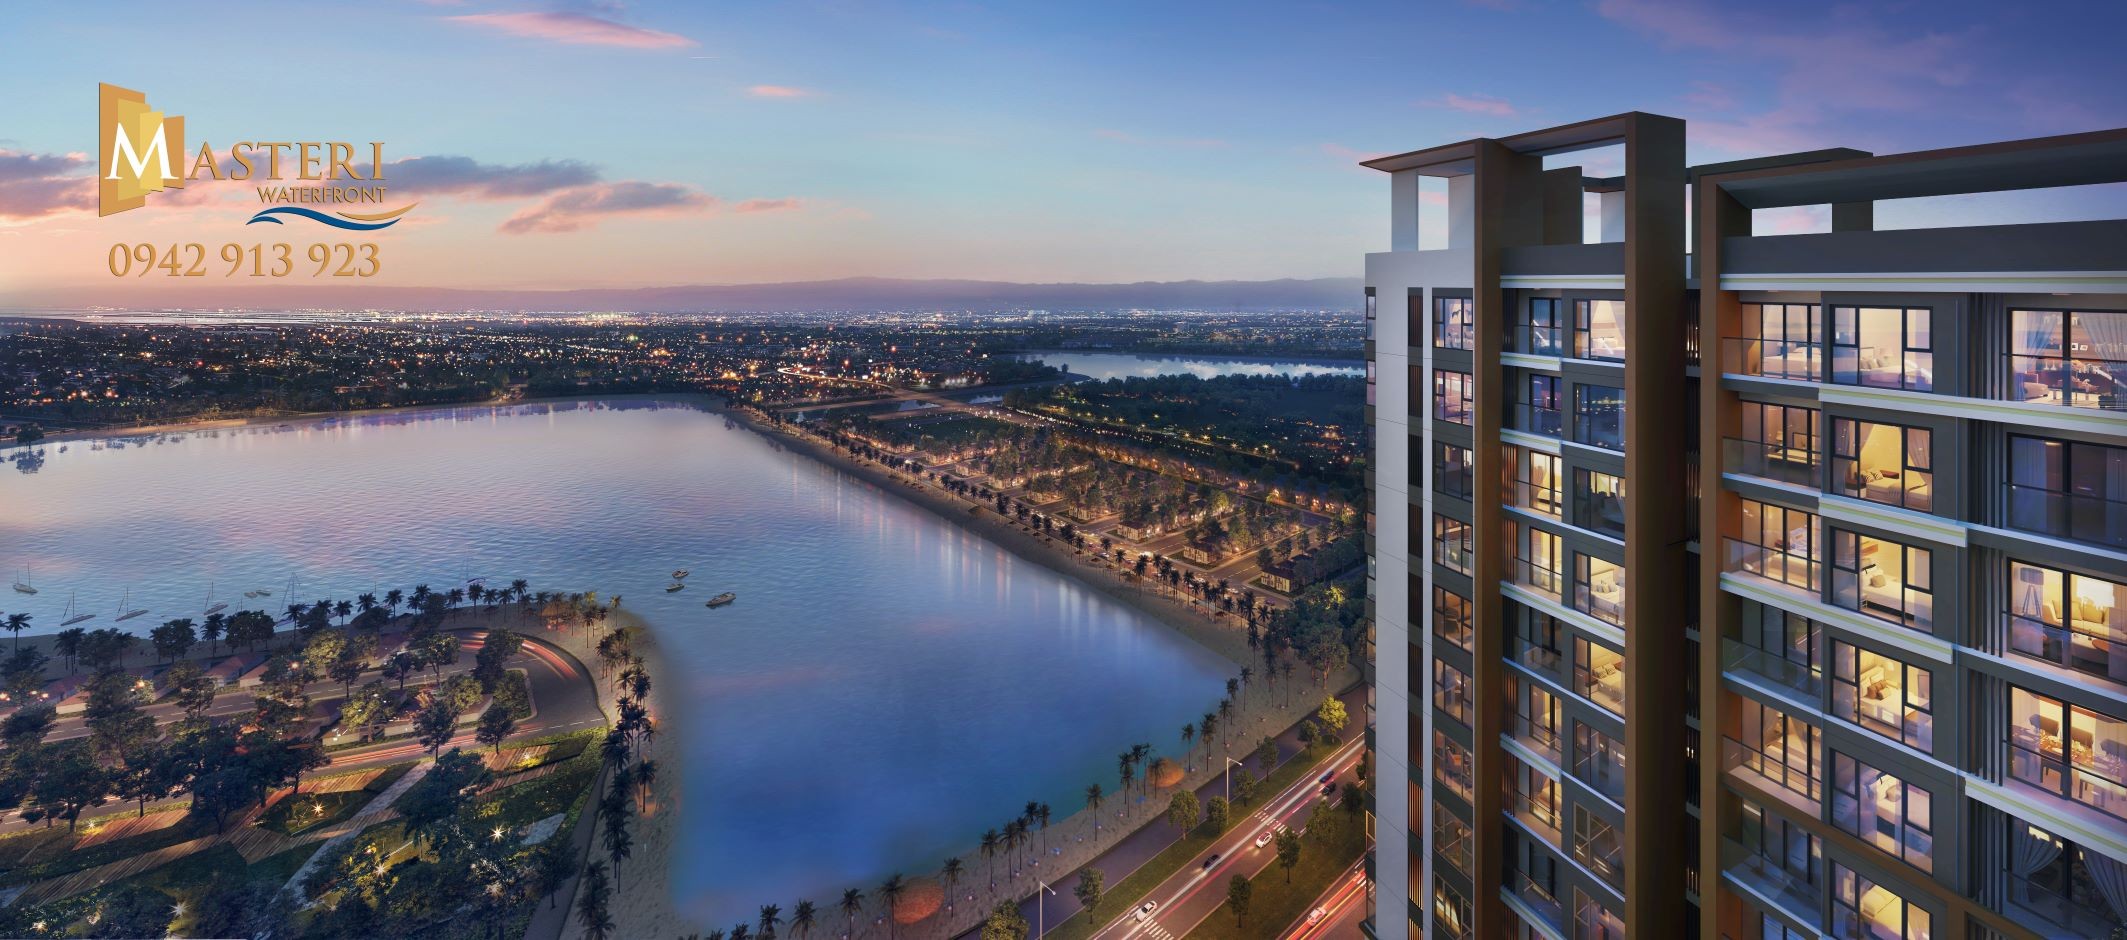 Mở bán căn hộ Masteri Waterfront view hồ điều hòa giá gốc chủ đầu tư